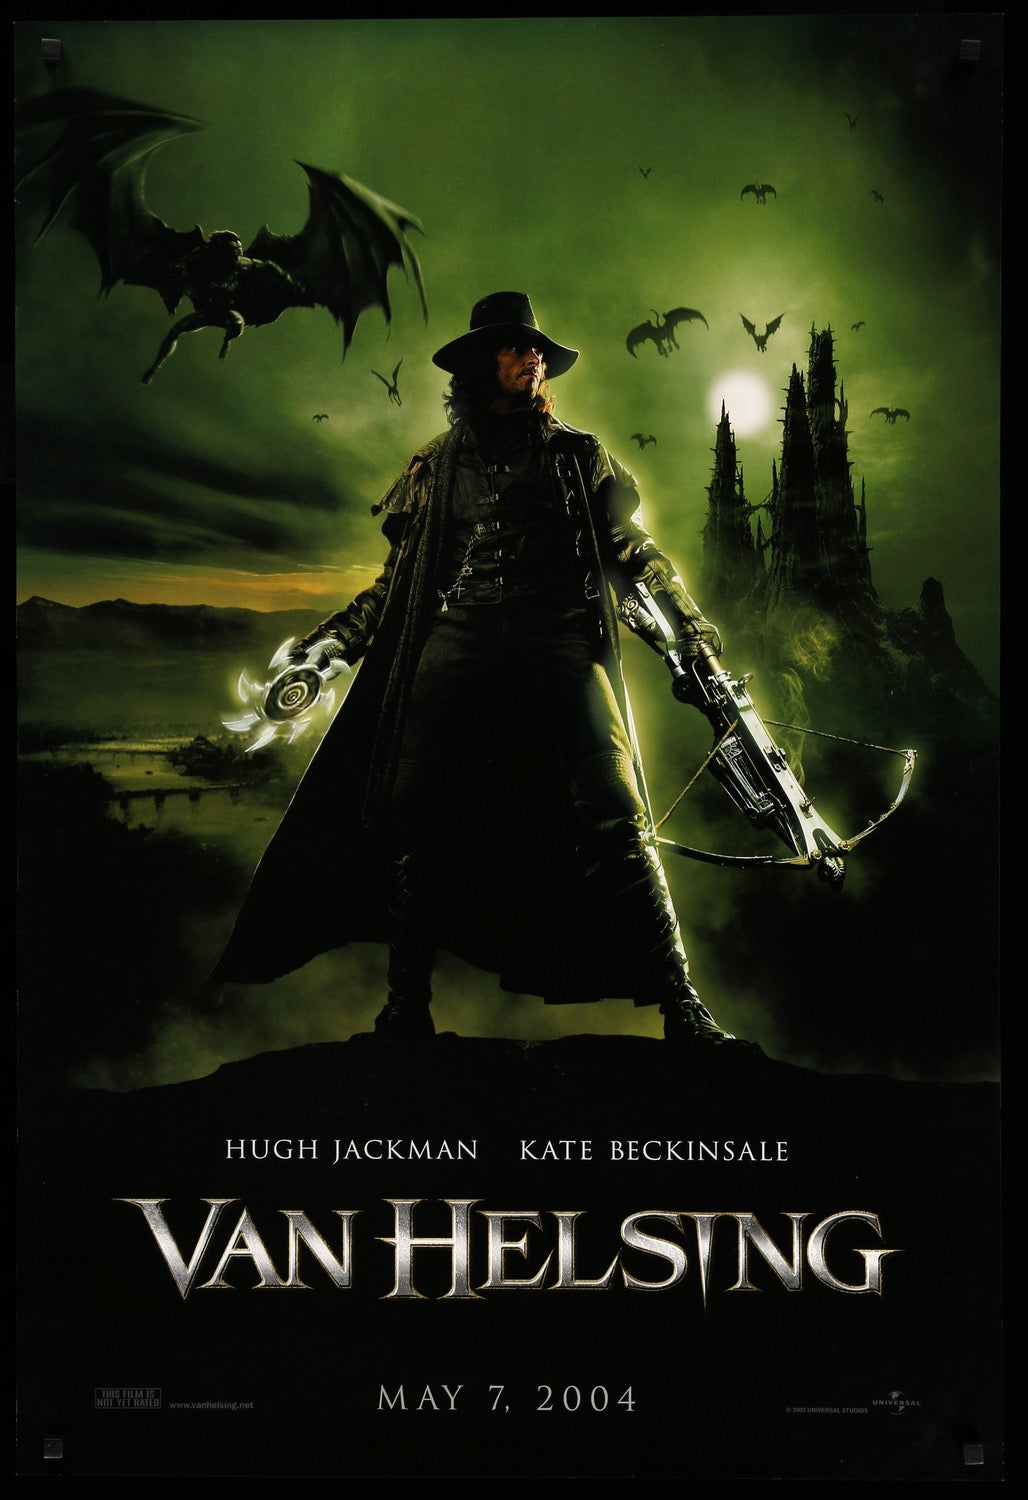 Van Helsing (2004) original movie poster for sale at Original Film Art